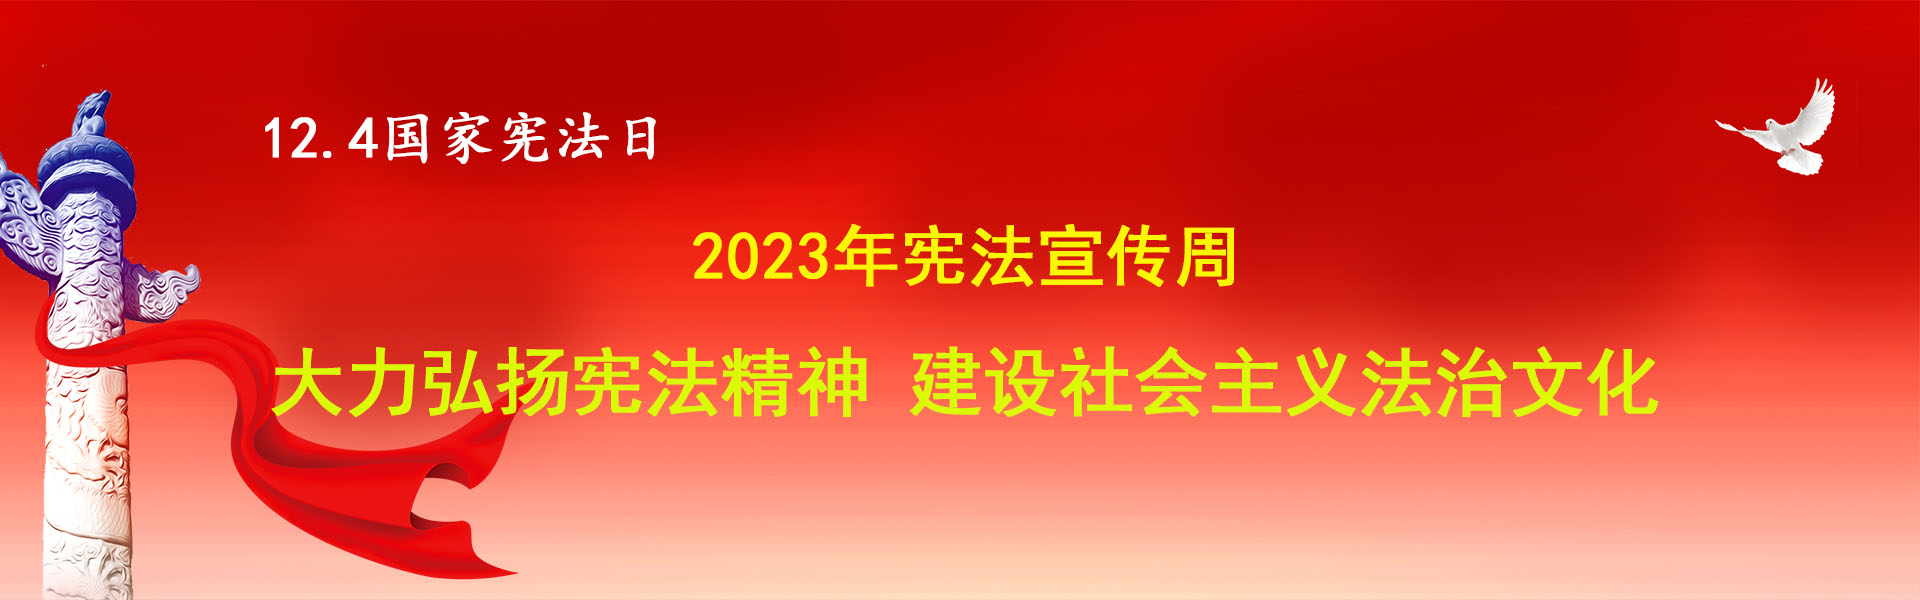 2023年宪法宣传周